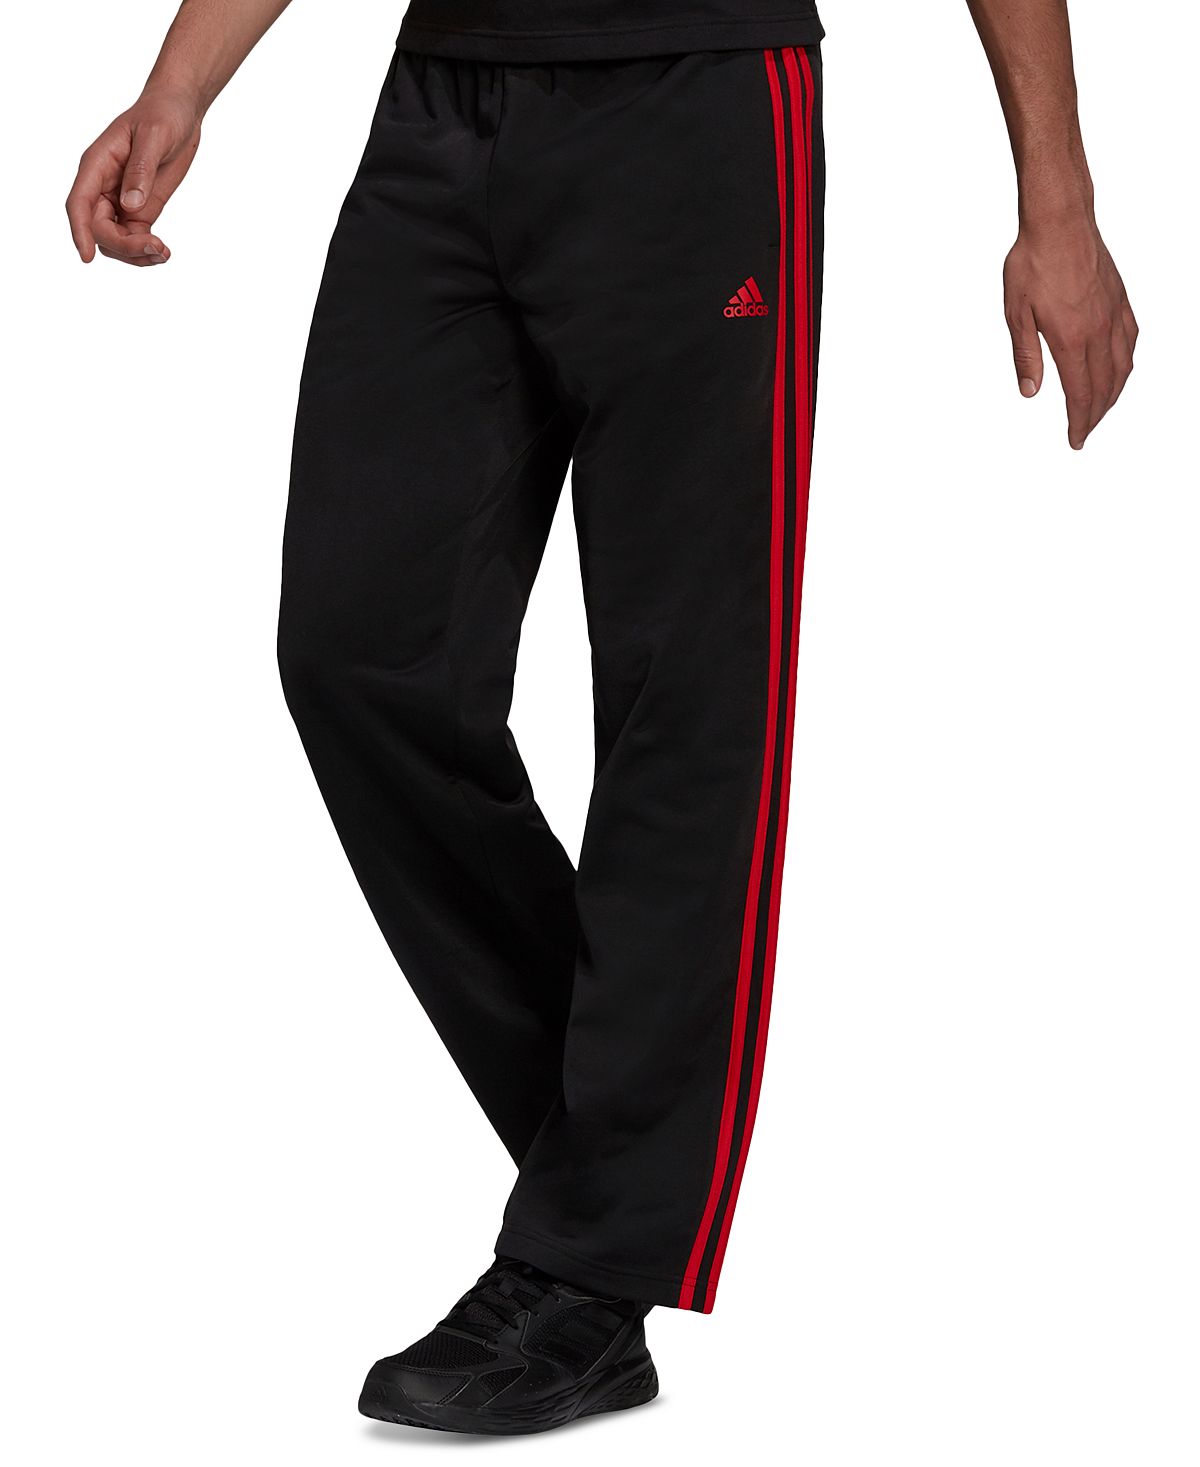 Мужские спортивные брюки Primegreen Essentials с открытым подолом и 3 полосками для разминки adidas цена и фото